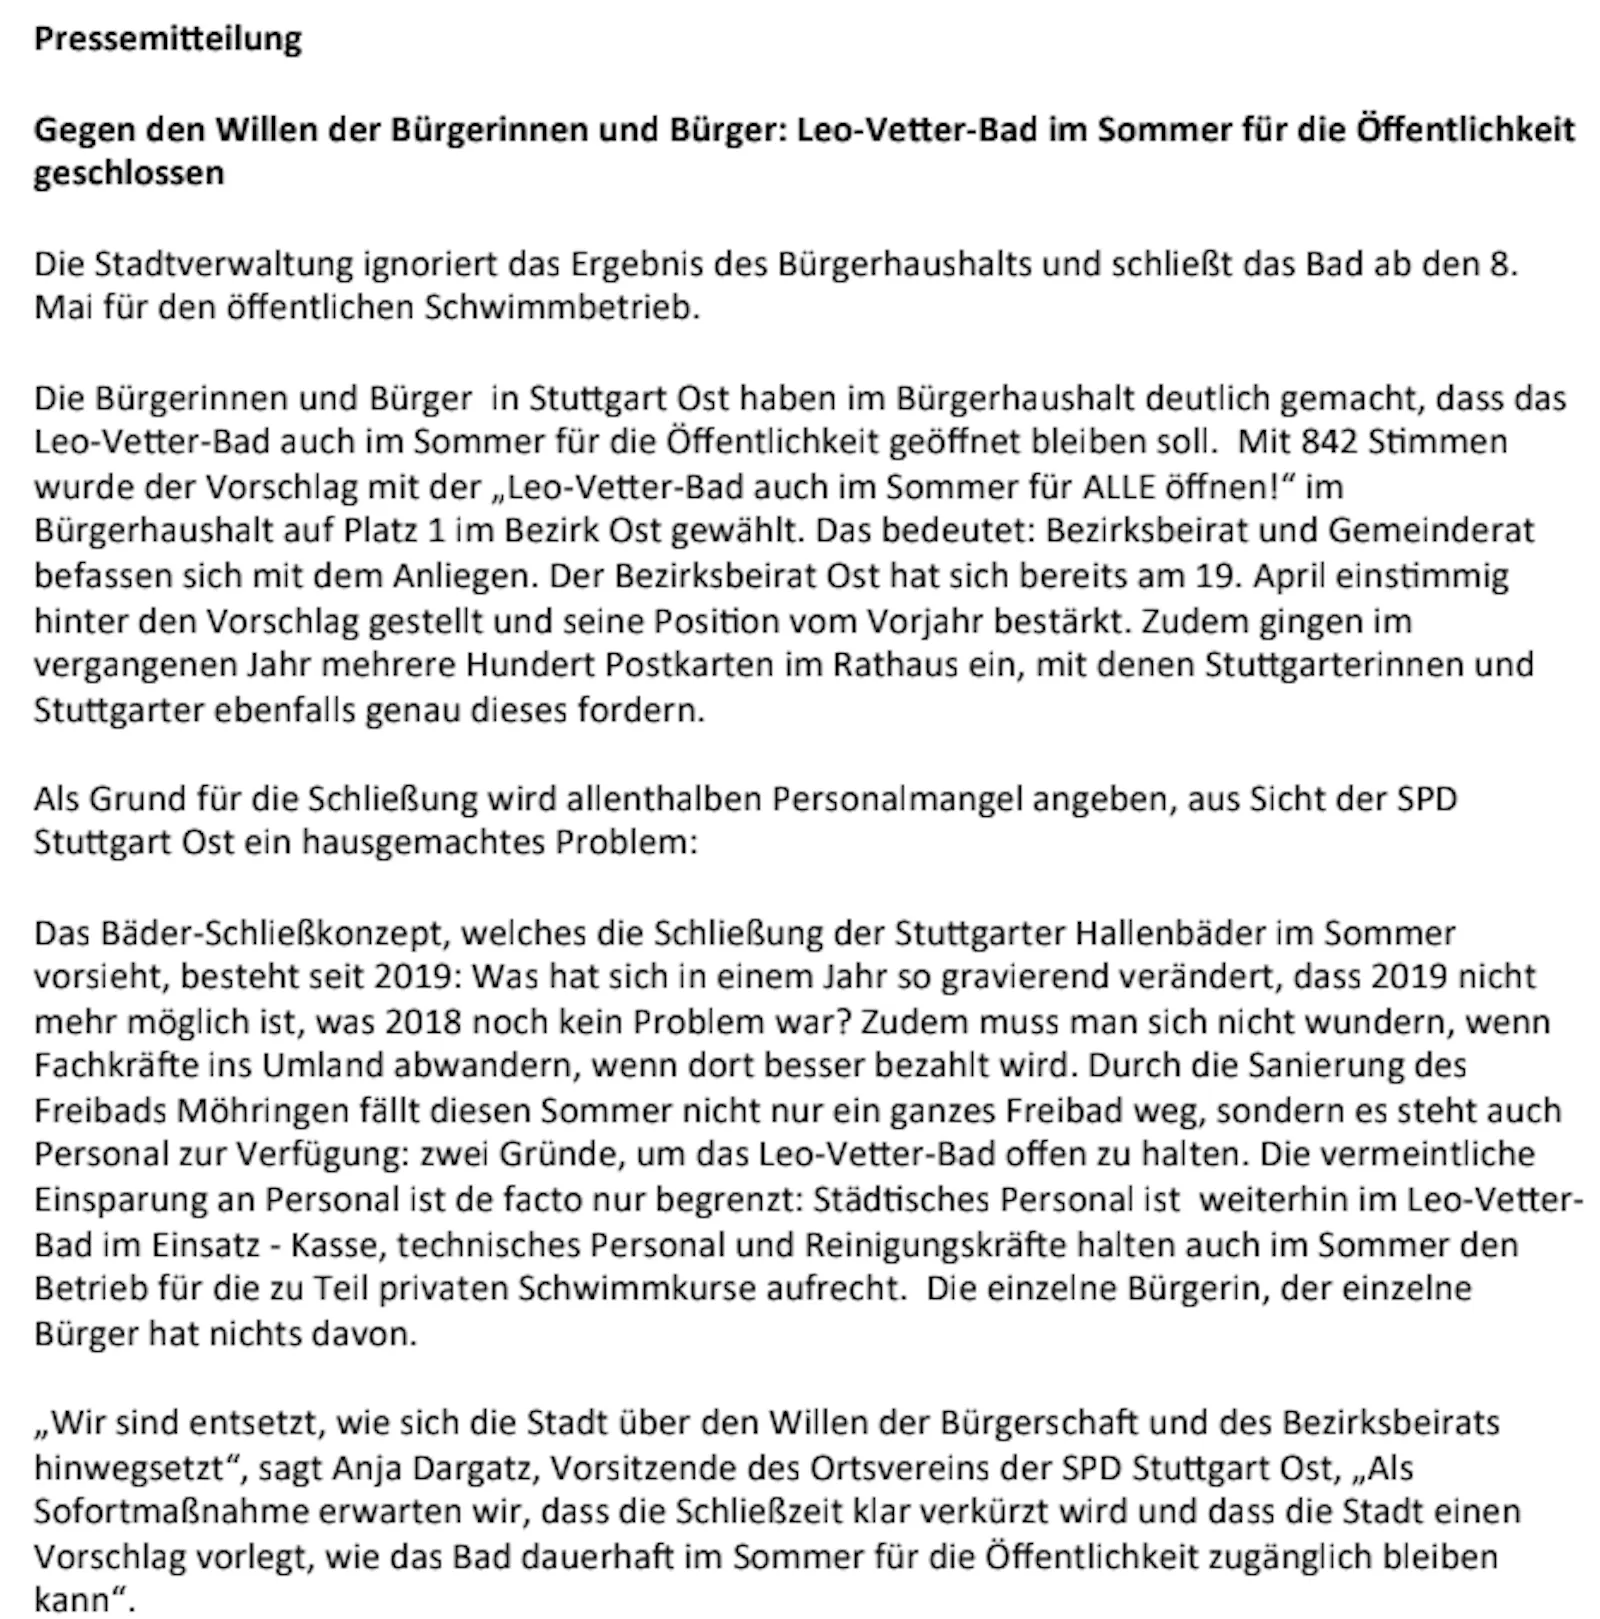 Pressemitteilung der SPD Stuttgart-Ost zur Schließung des Leo-Vetter-Bads während der Freibadsaison.